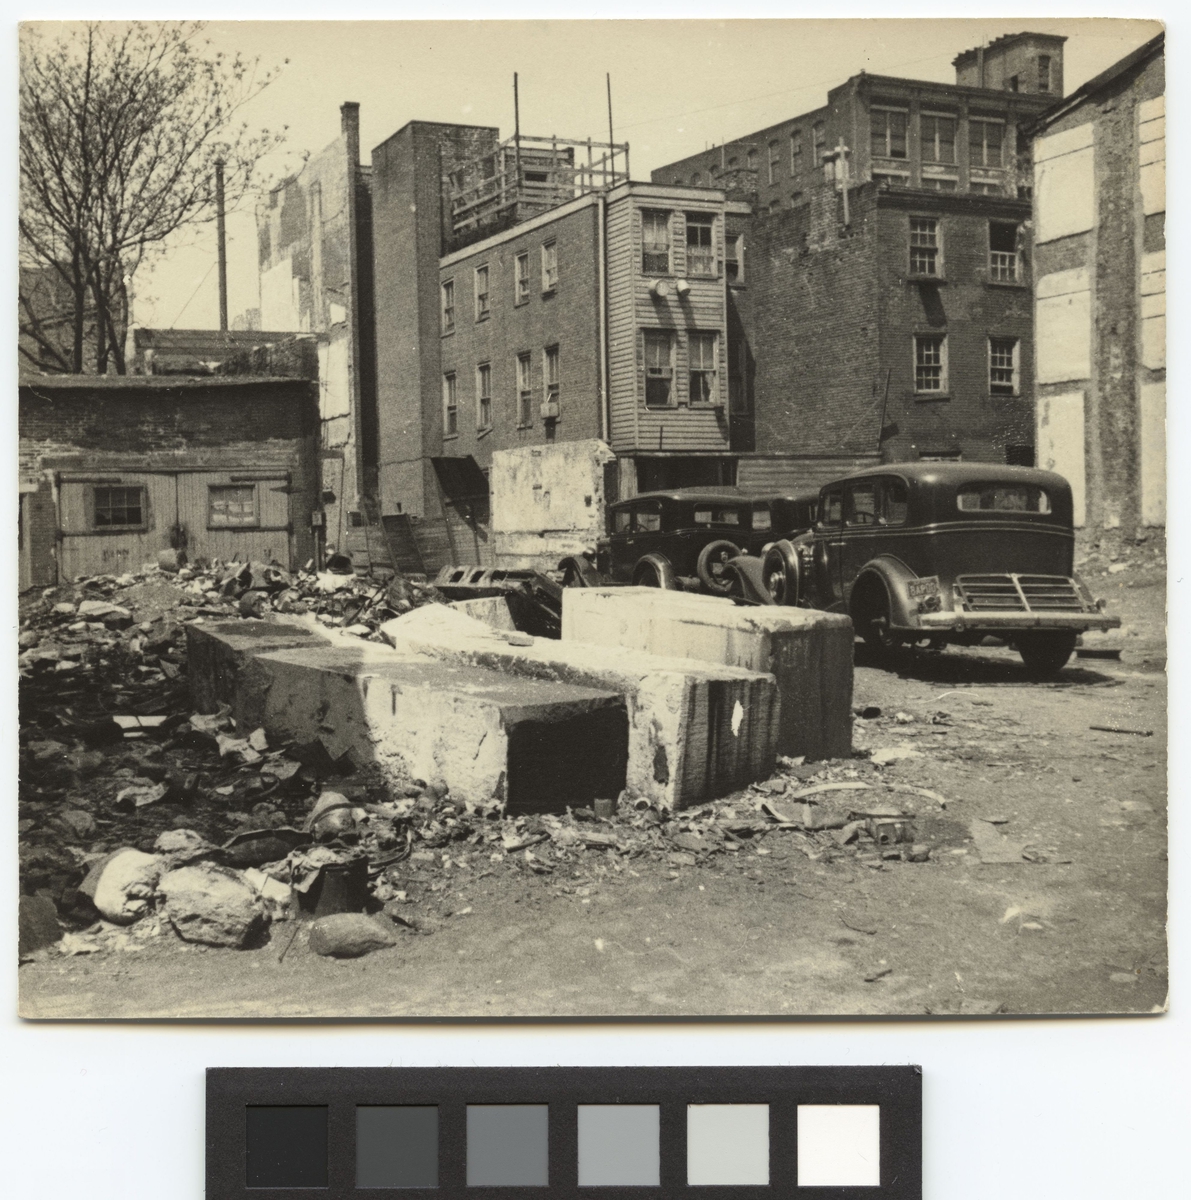 Svenska Amerikastiftelsens stipendieresa 1937
Byggnader och miljöer i Philadelphia